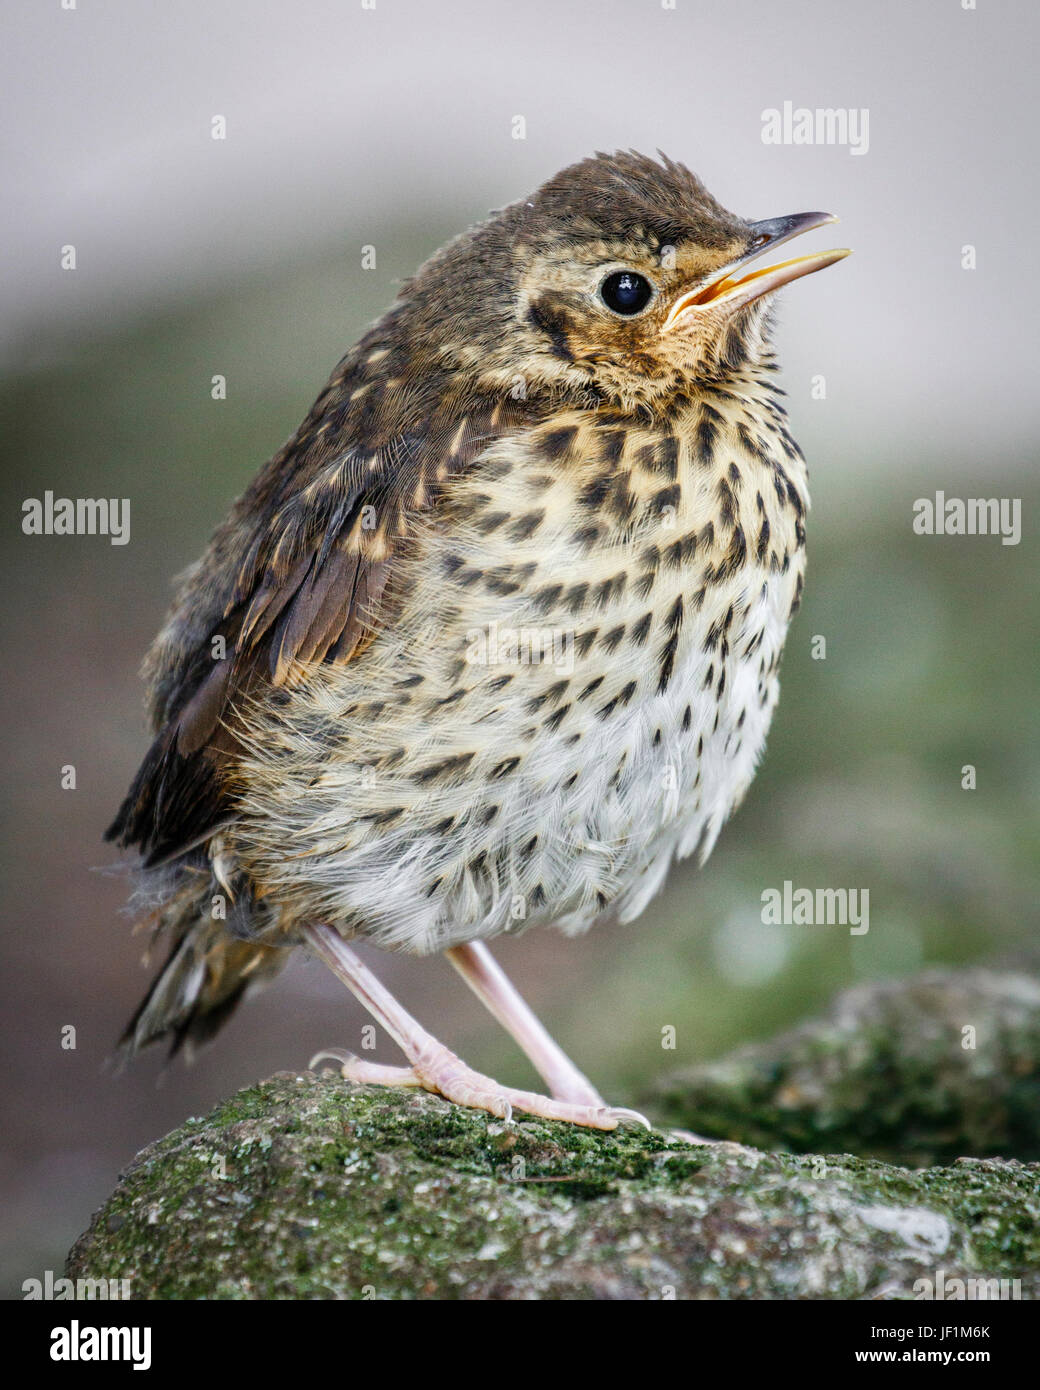 skylark british bird Stock Photo